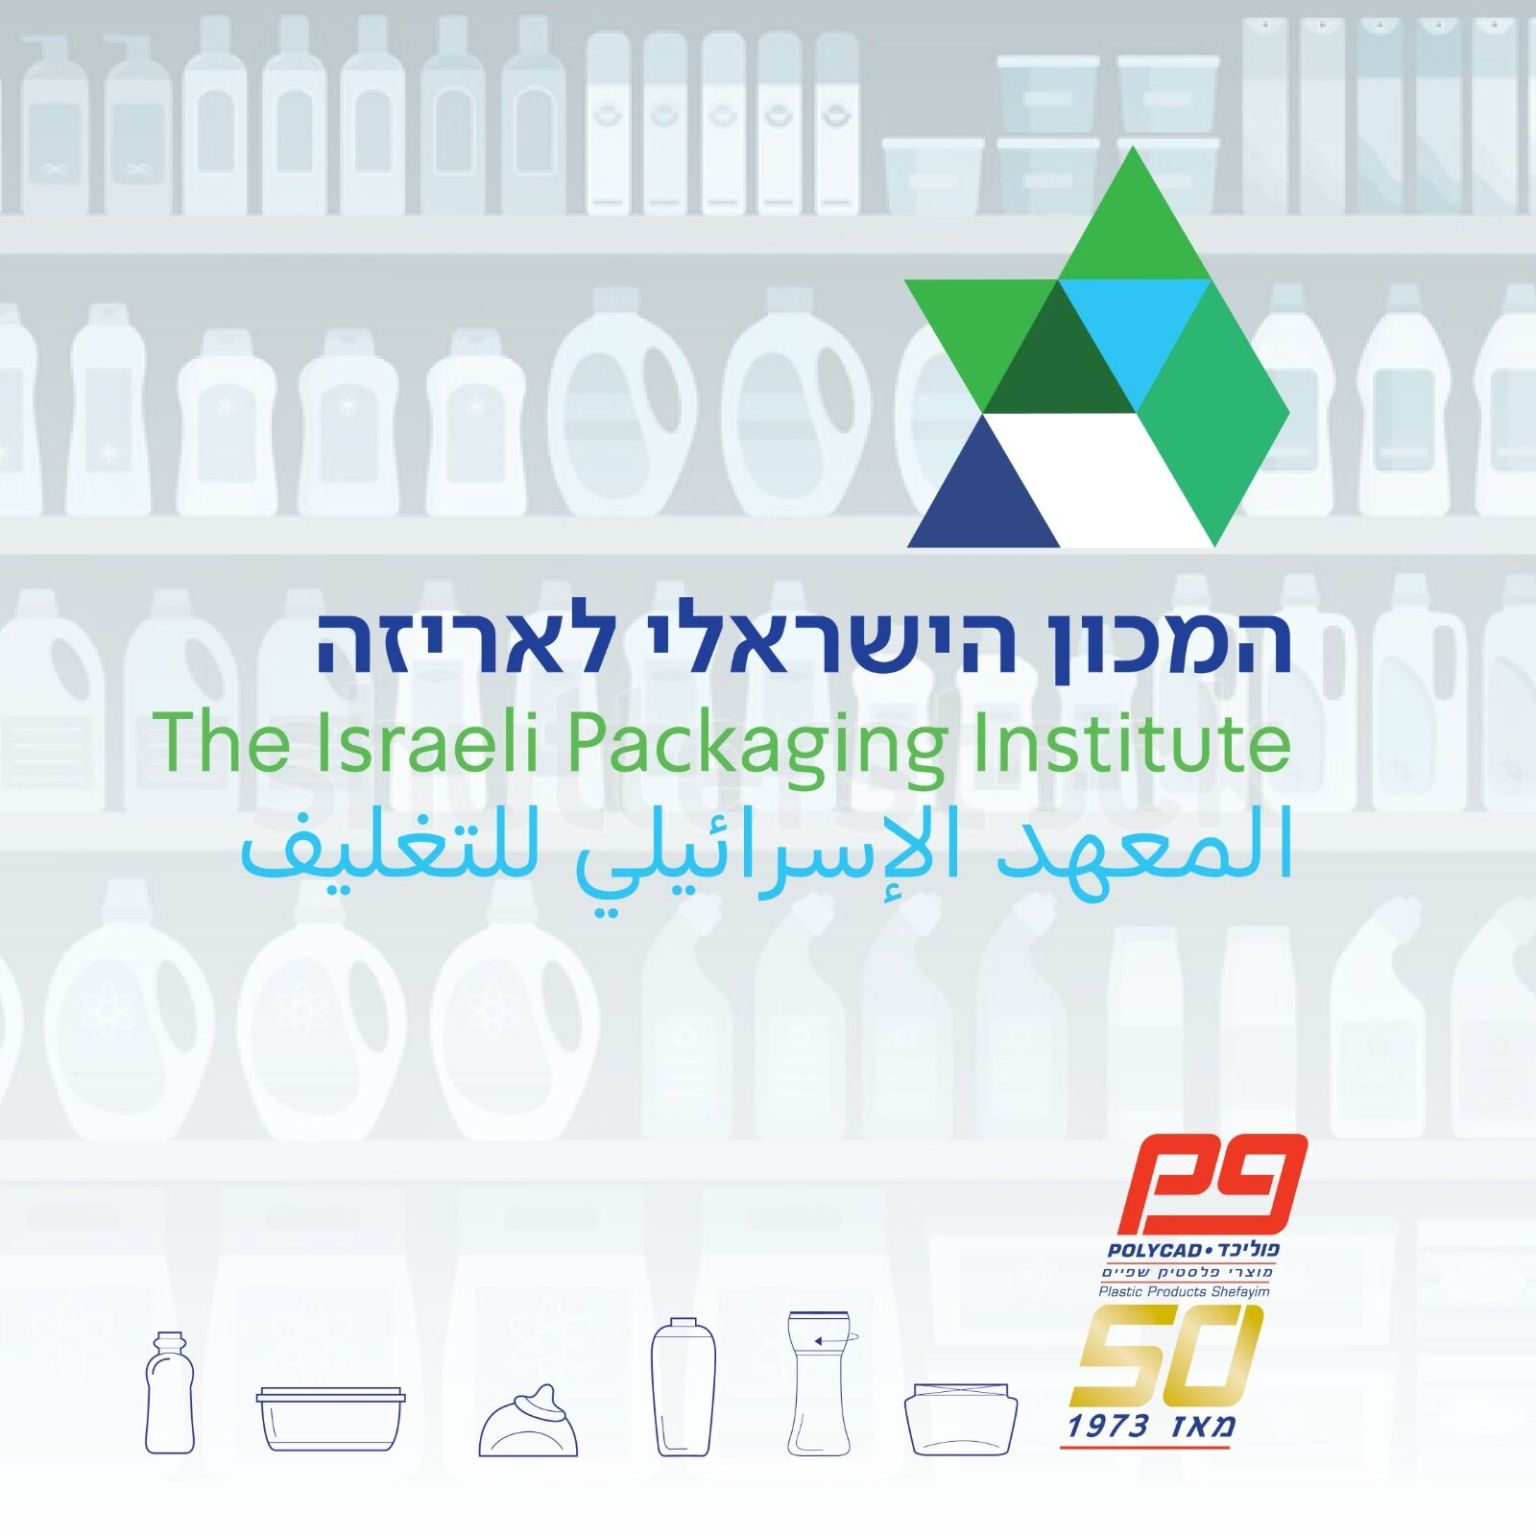 בנוסף, המכון הישראלי לאריזה מתחדש בלוגו חדש ויפיפה! 